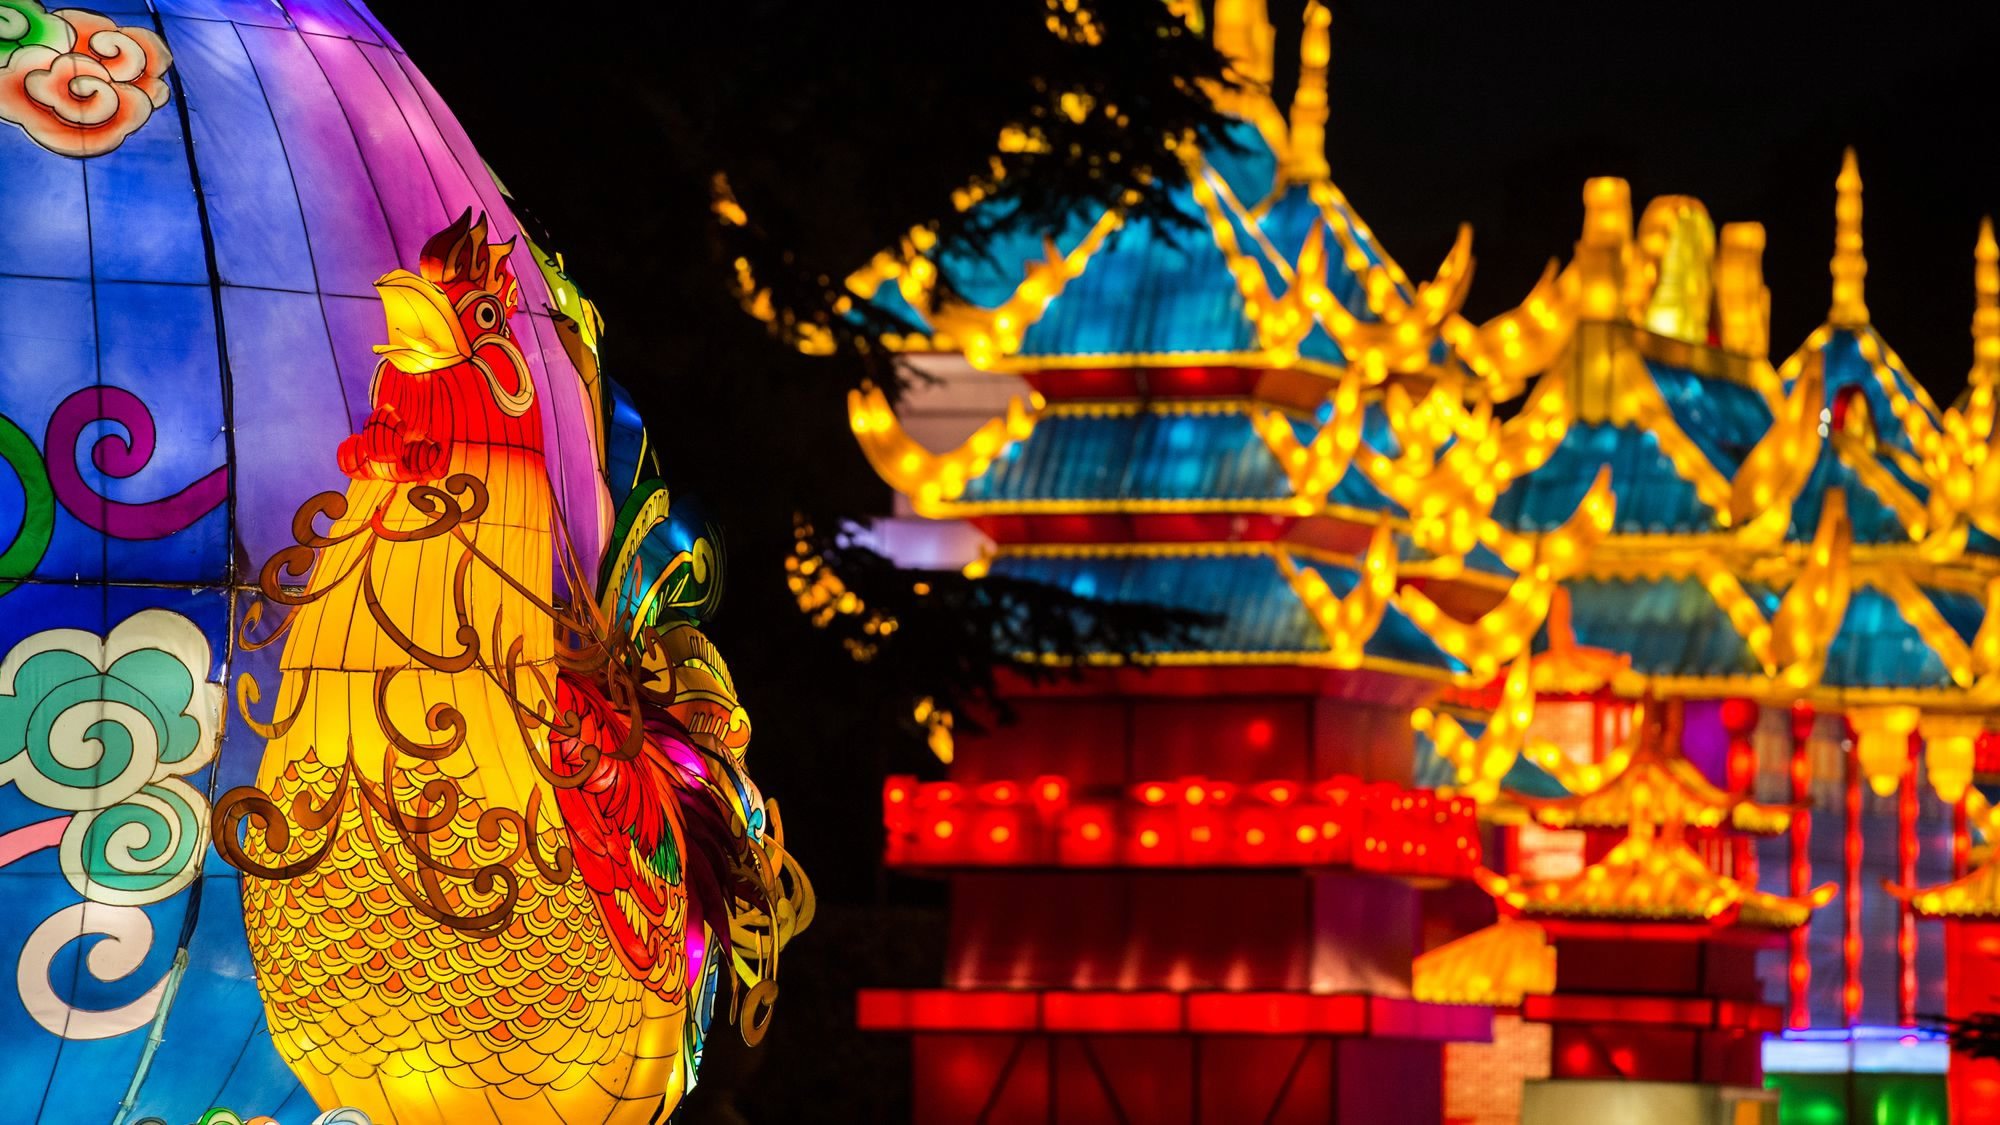 Silk Roadinspired Chinese lanterns light up London (Written by Li Jing